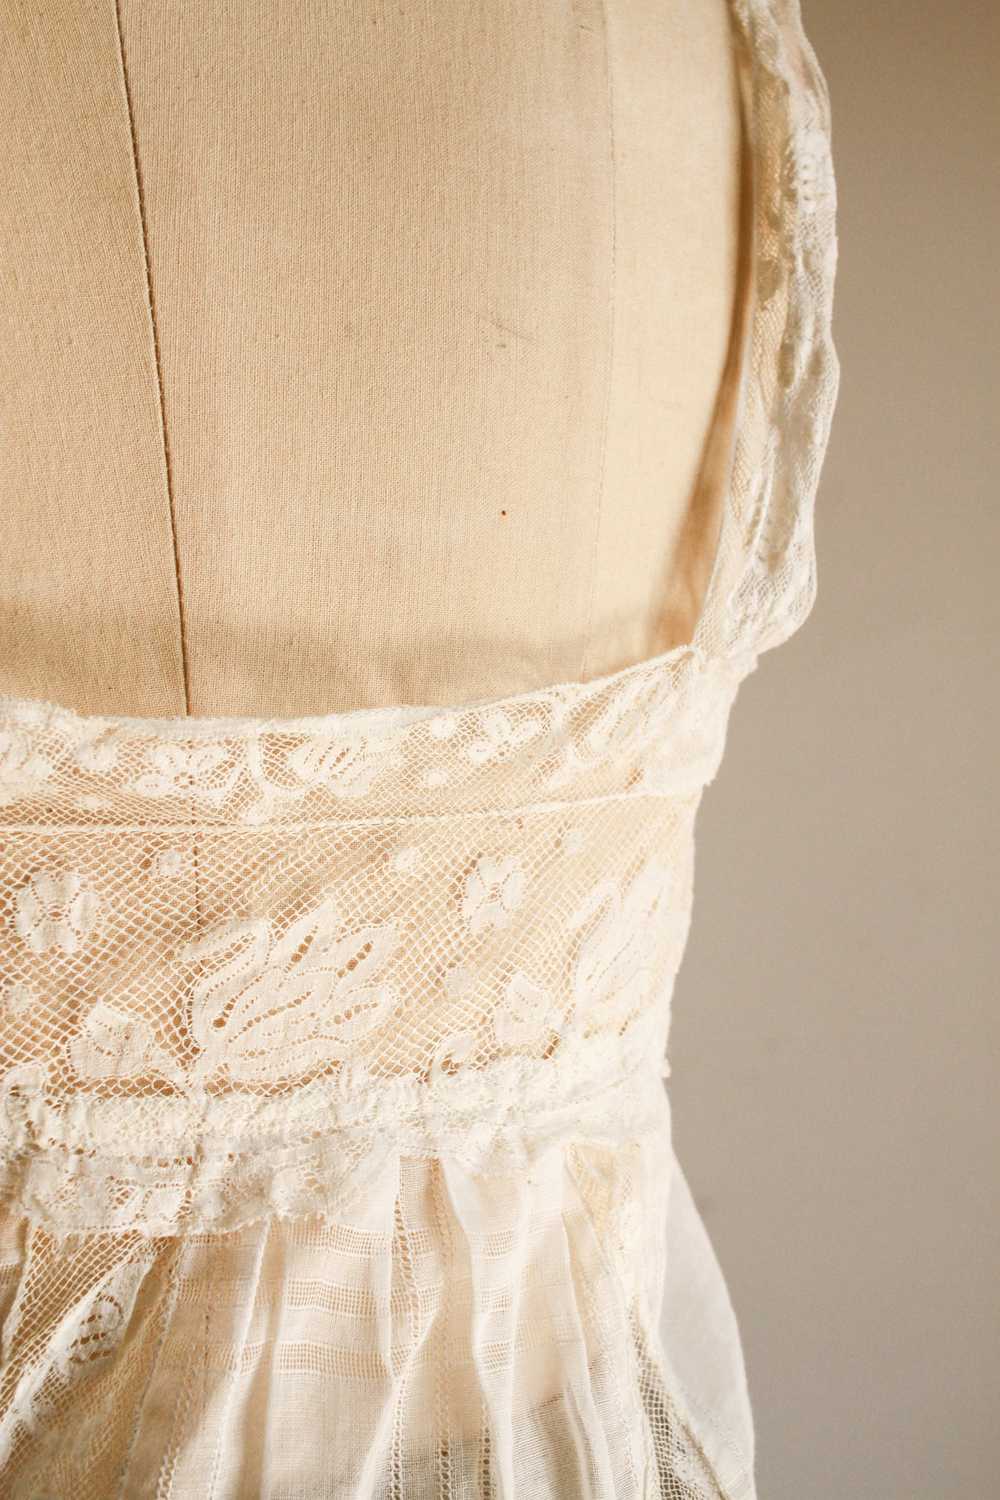 Victorian White Windowpane Cotton Camisole - image 2